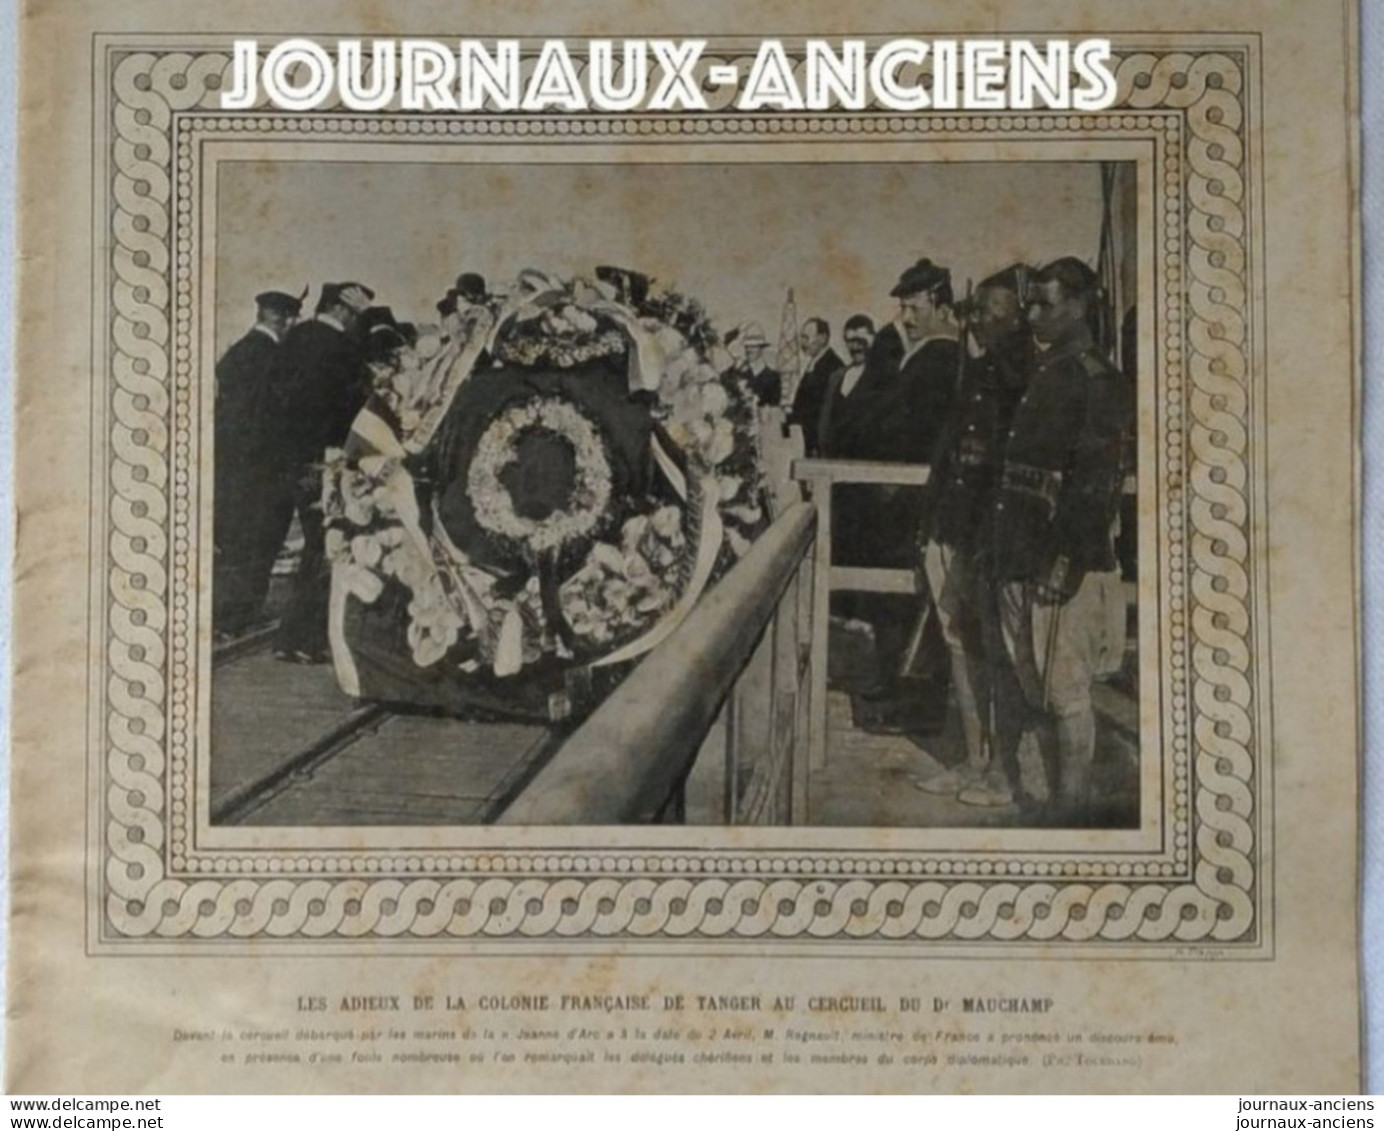 1907 MAROC - TANGER - LES ADIEUX DE LA COLONNE FRANÇAISE AU CERCUEIL DU Dr MAUCHAMP - LE MONDE ILLUSTRÉ - Journaux Anciens - Avant 1800